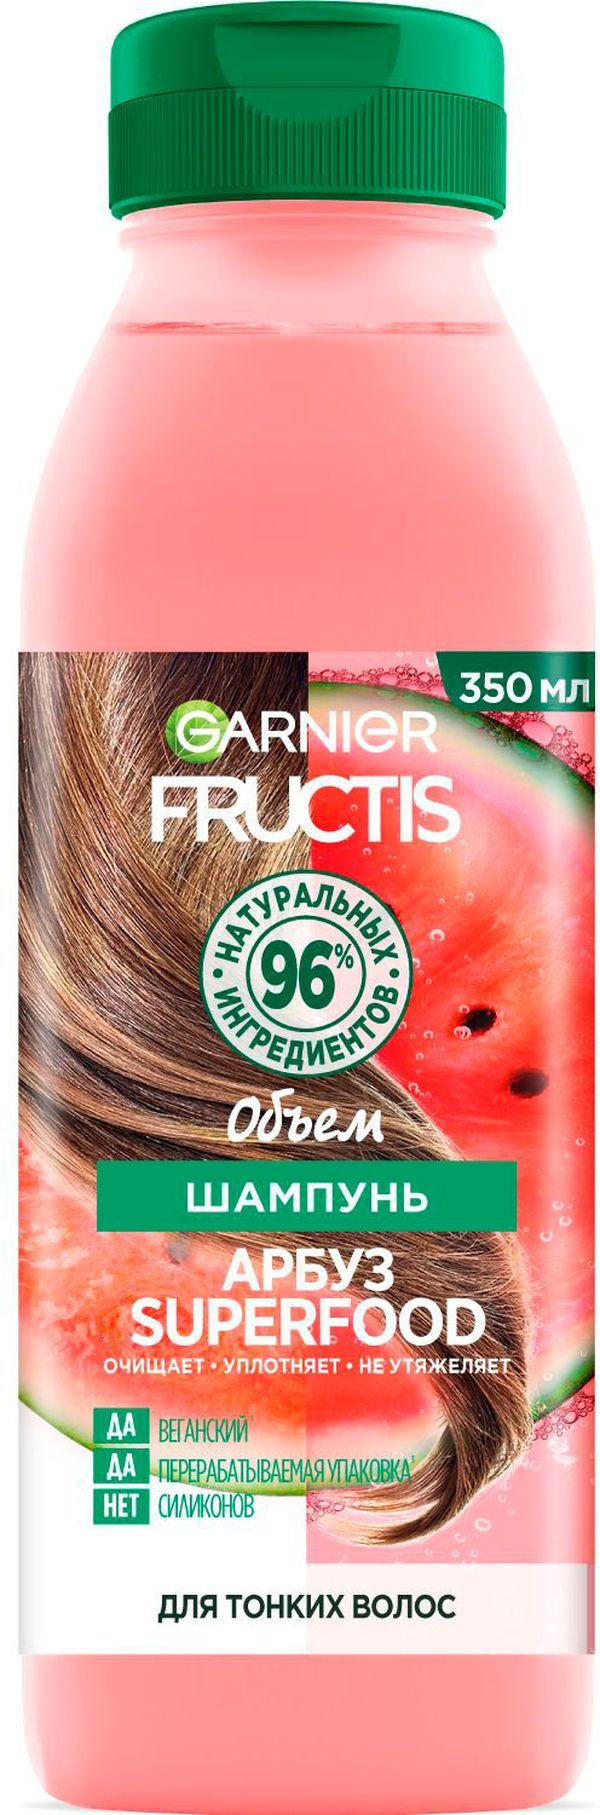 Шампунь Garnier Fructis для волос арбуз 350мл